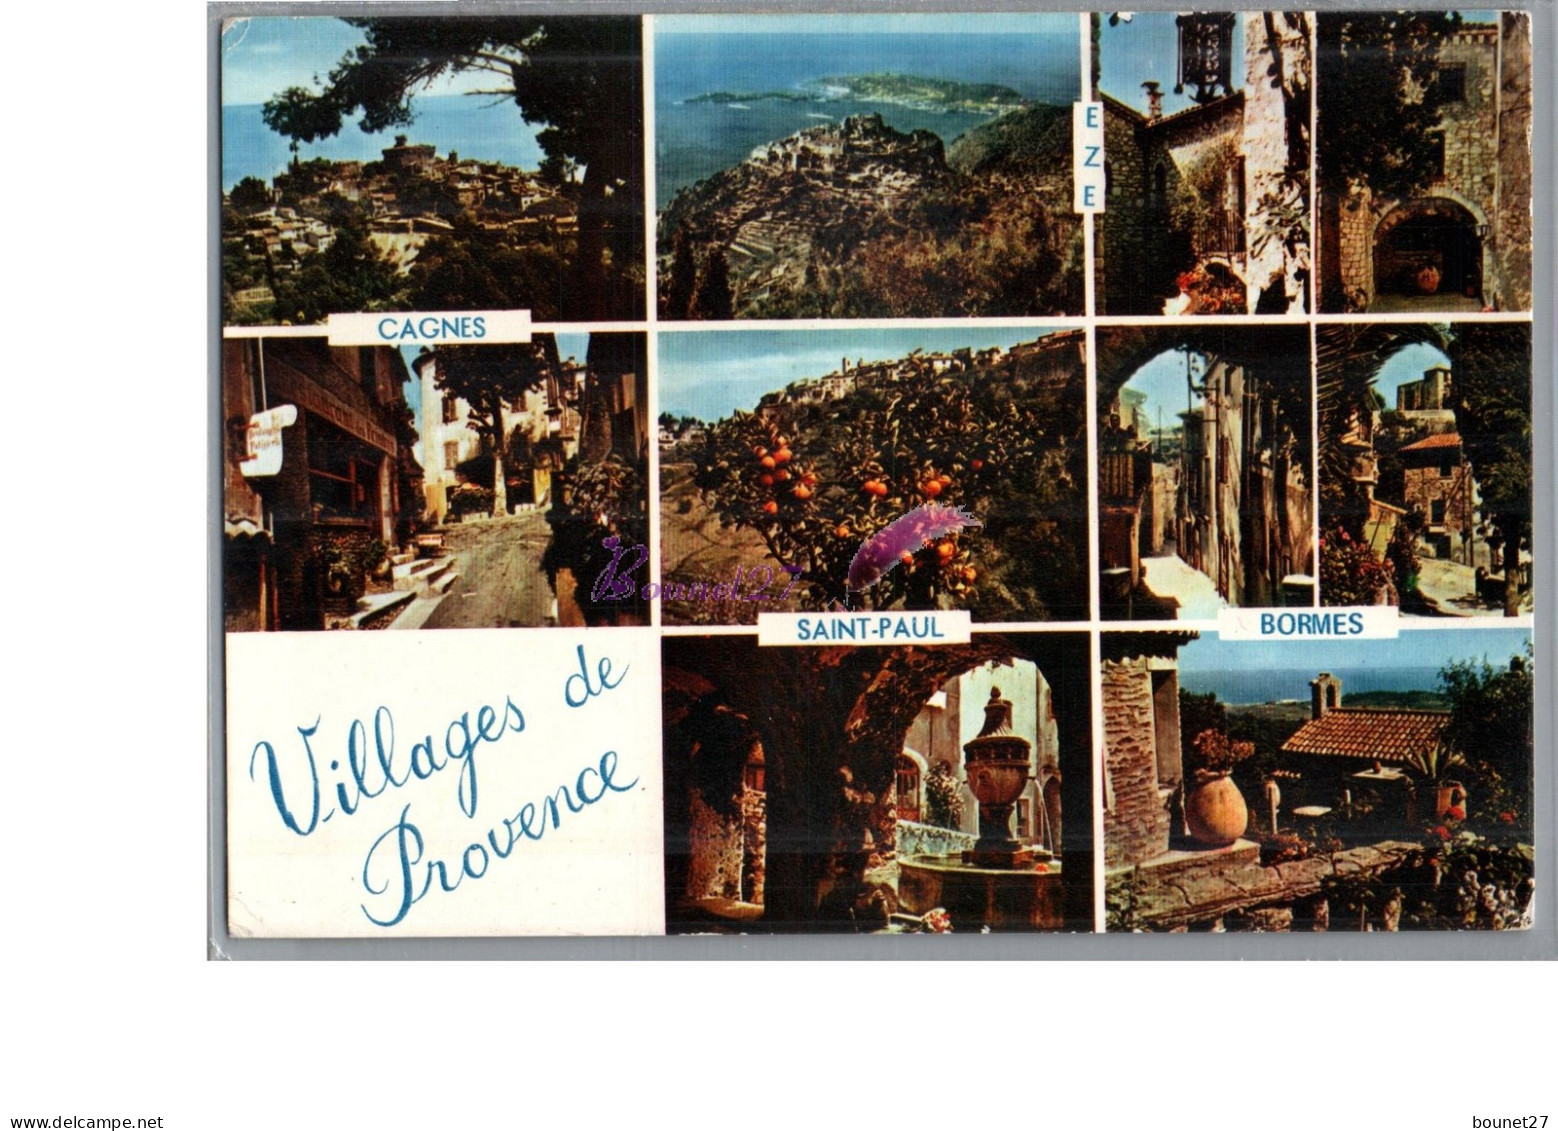 VILLAGES DE PROVENCES - Cagnes Eze Saint Paul Bormes 1975 - Provence-Alpes-Côte D'Azur